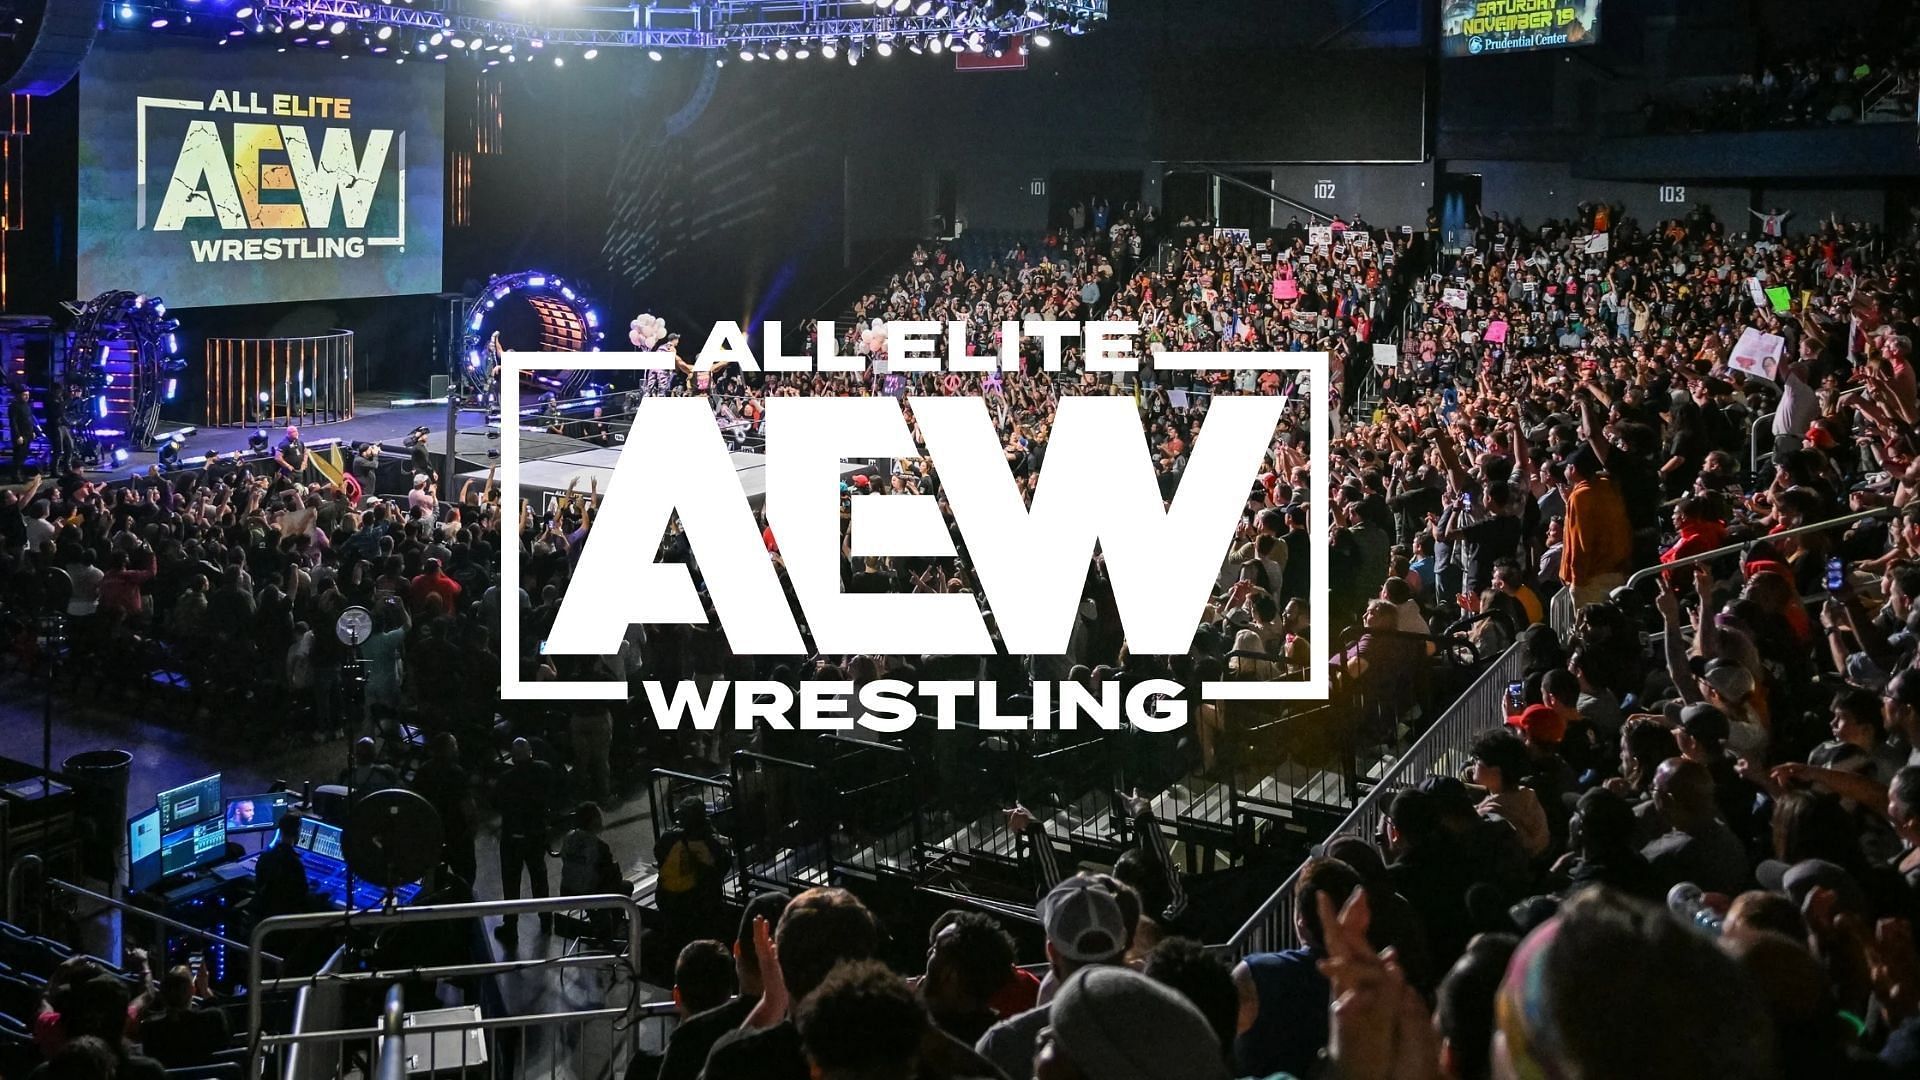 All Elite Wrestling was established in 2019